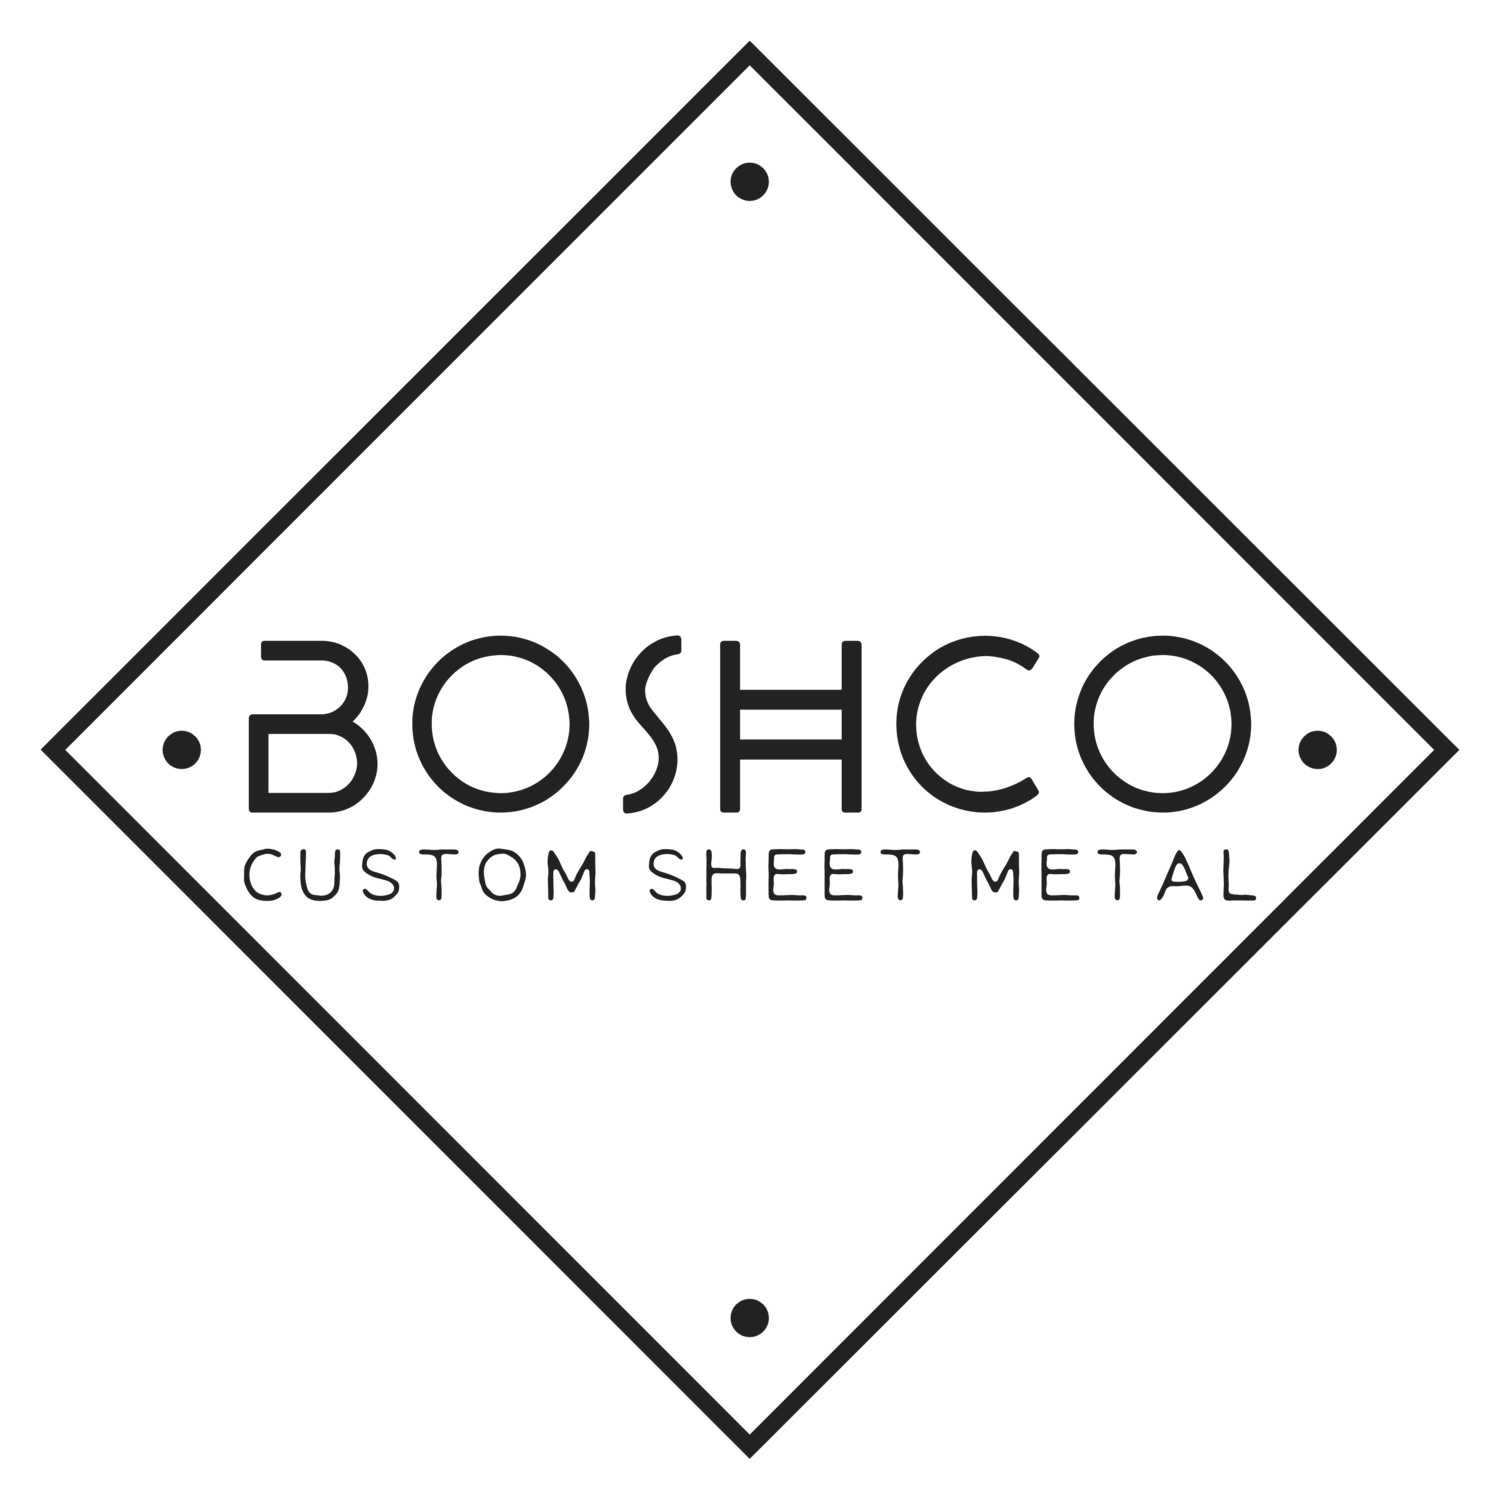 Boshco Custom Sheet Metal